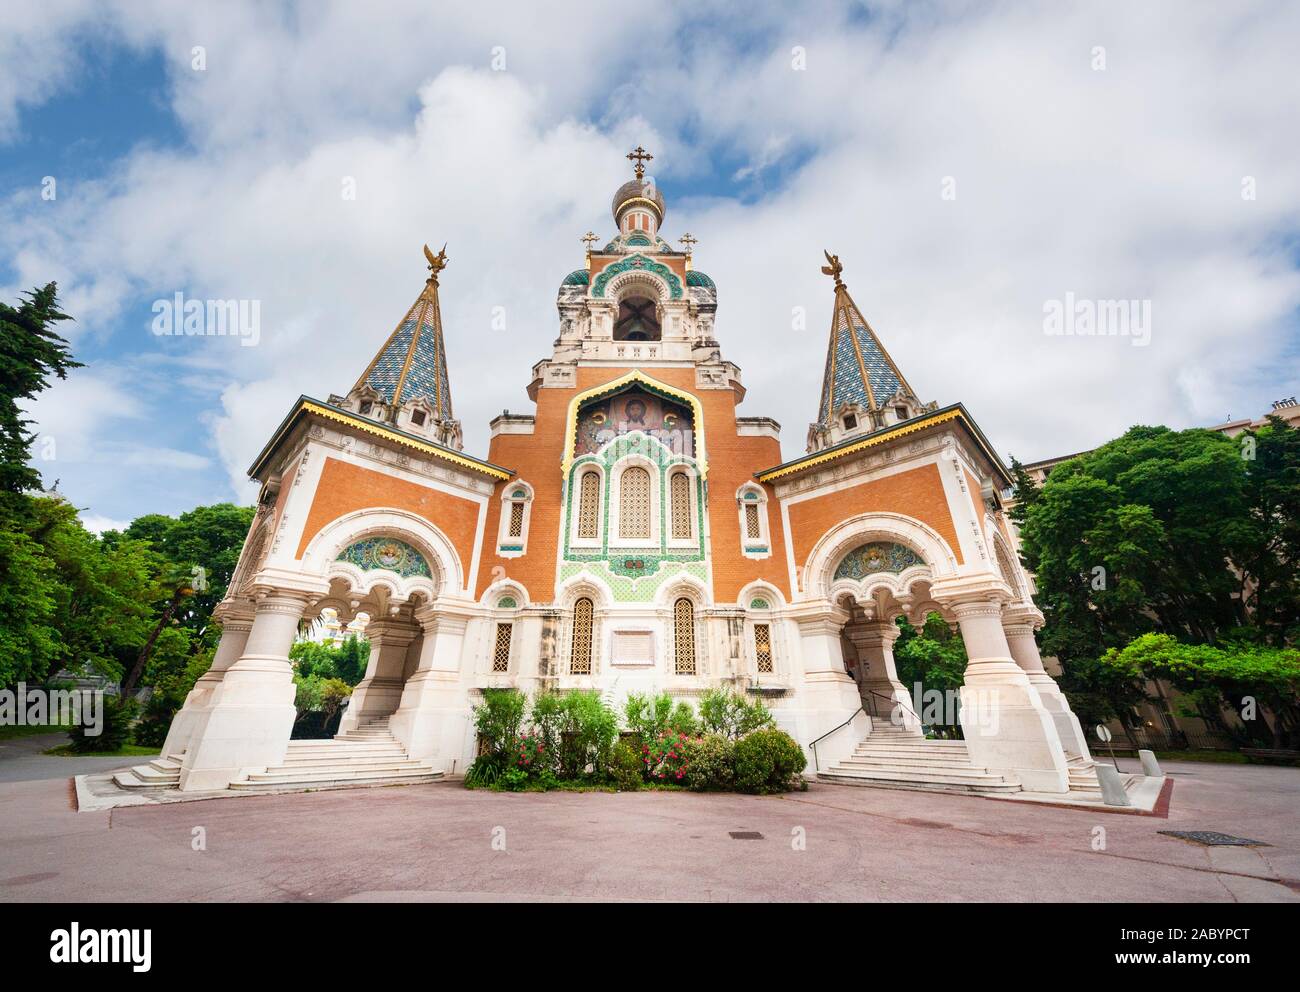 La chiesa russo-ortodossa Cattedrale di San Nicola a Nizza Francia. Cathédrale Orthodoxe Russe Saint-Nicolas de Nice Foto Stock